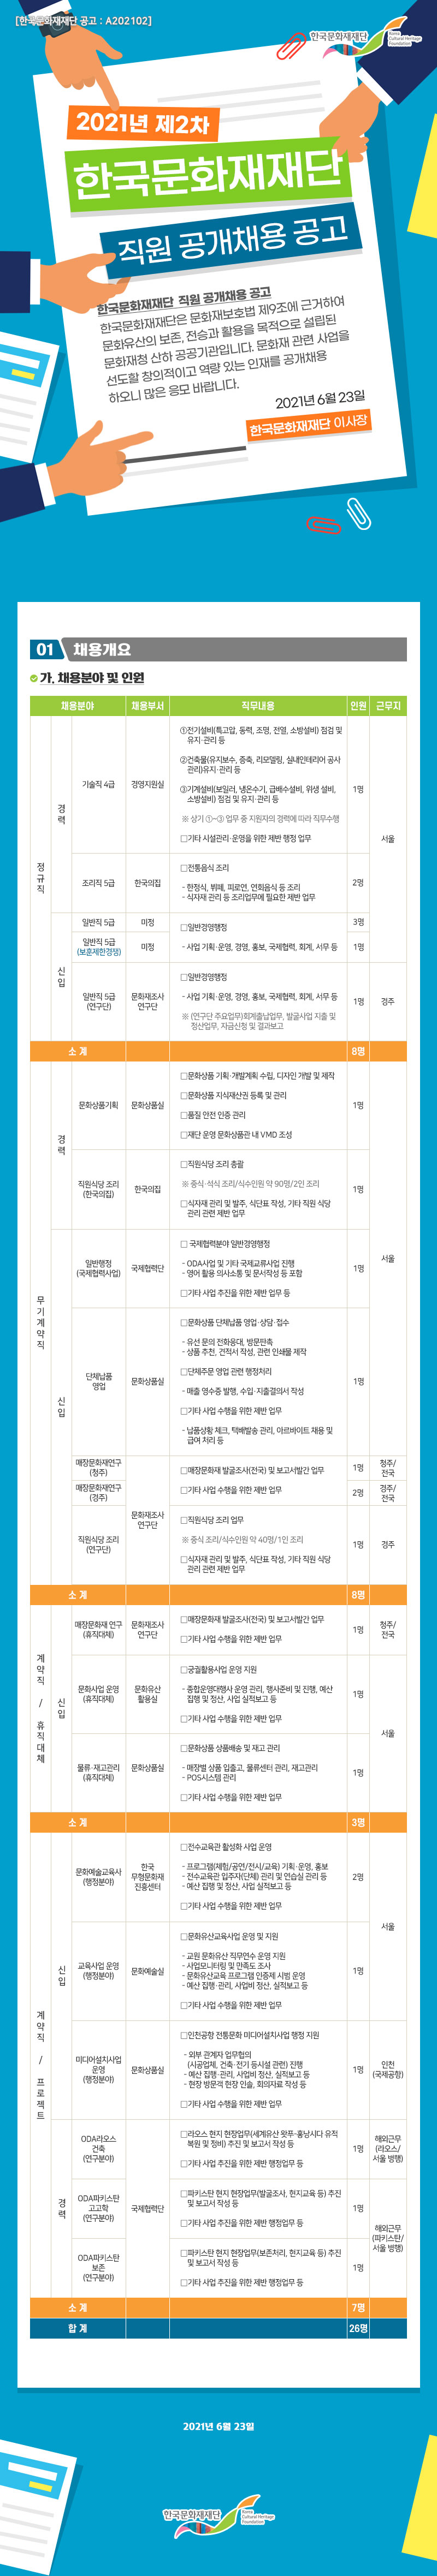 2021년 제2차 한국문화재재단 직원 공개채용 공고 포스터_자세한 내용 하단참조